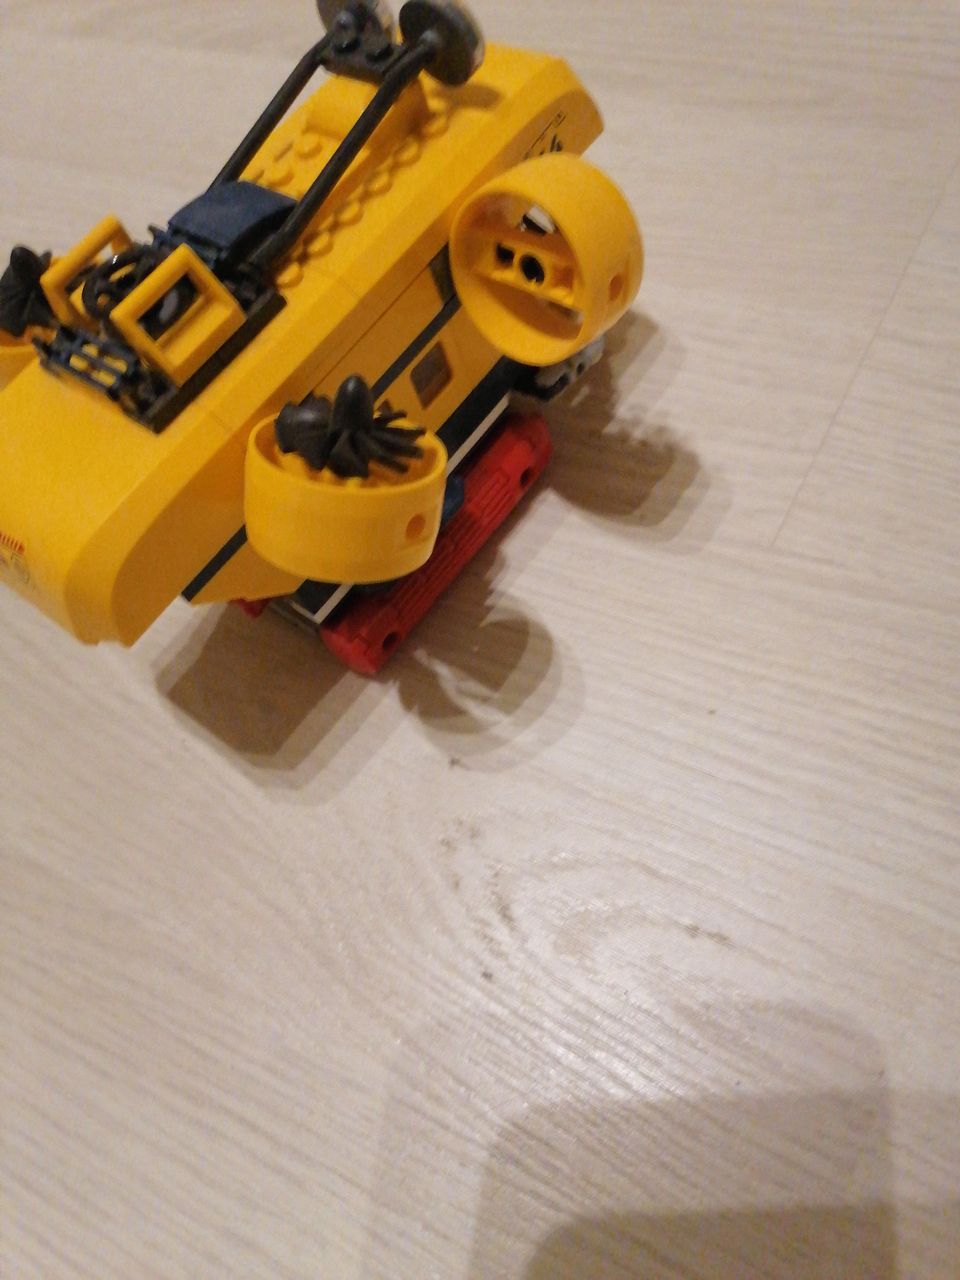 Lego submarine